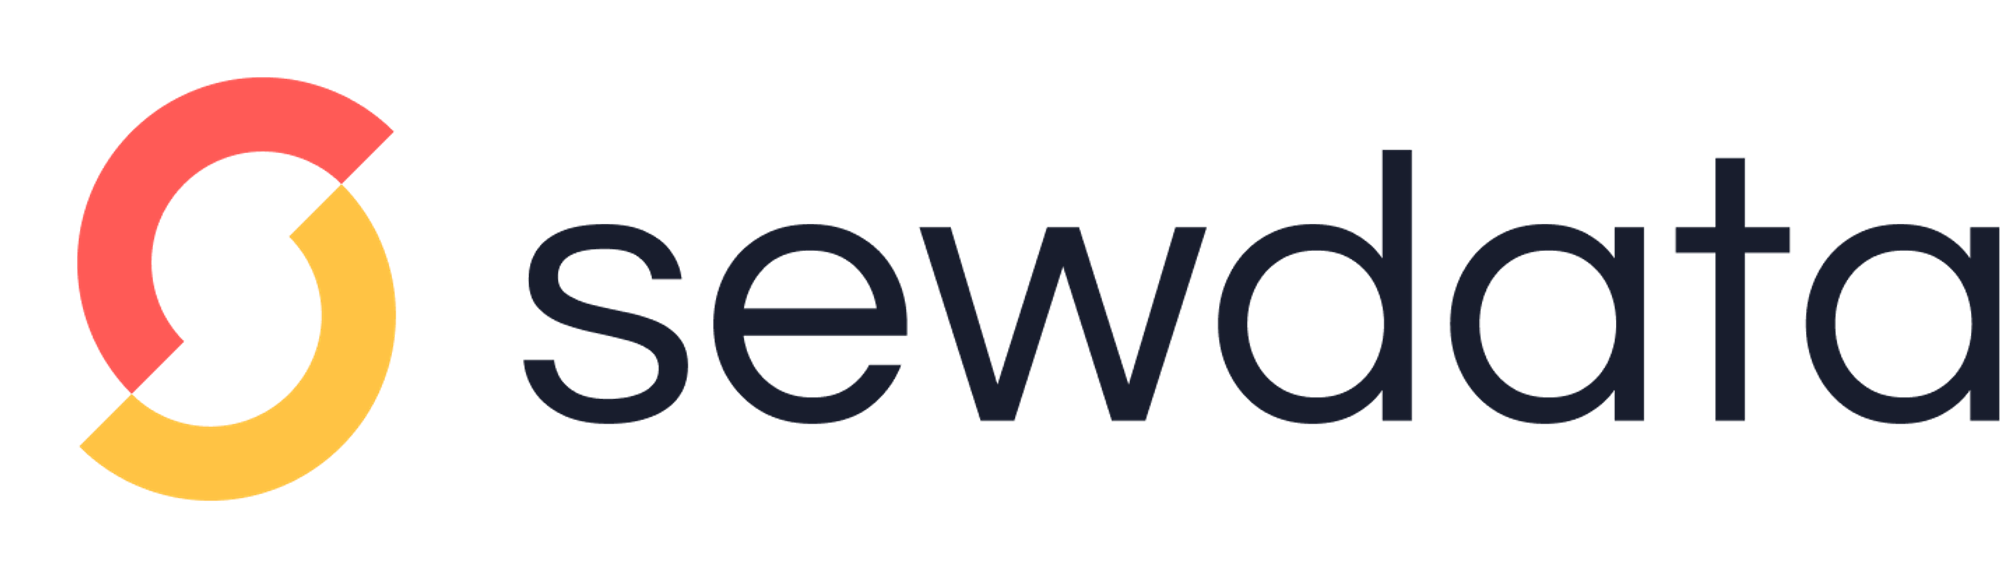 Modern logo design for sewdata.com